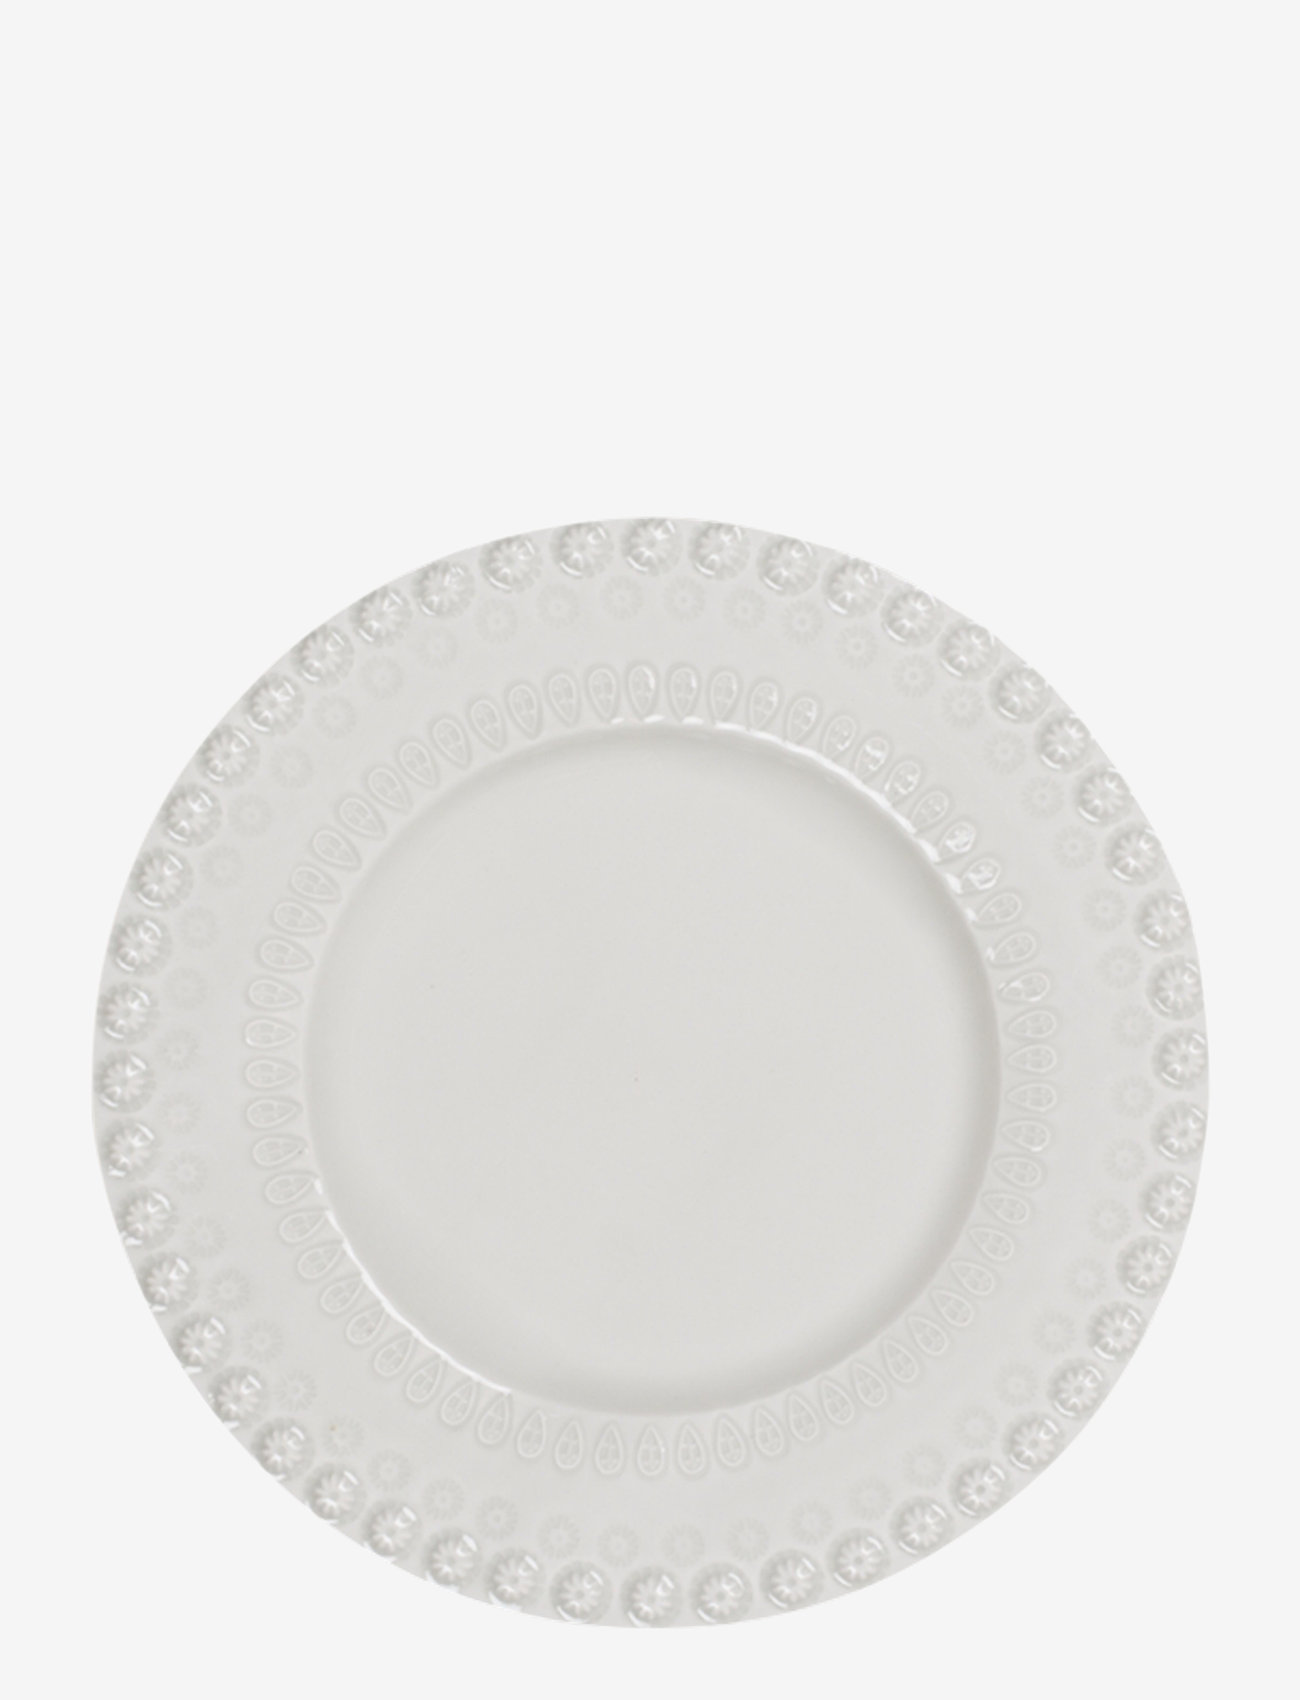 PotteryJo - DAISY Dessertplate 22 cm 2-PACK - assietter - white - 0